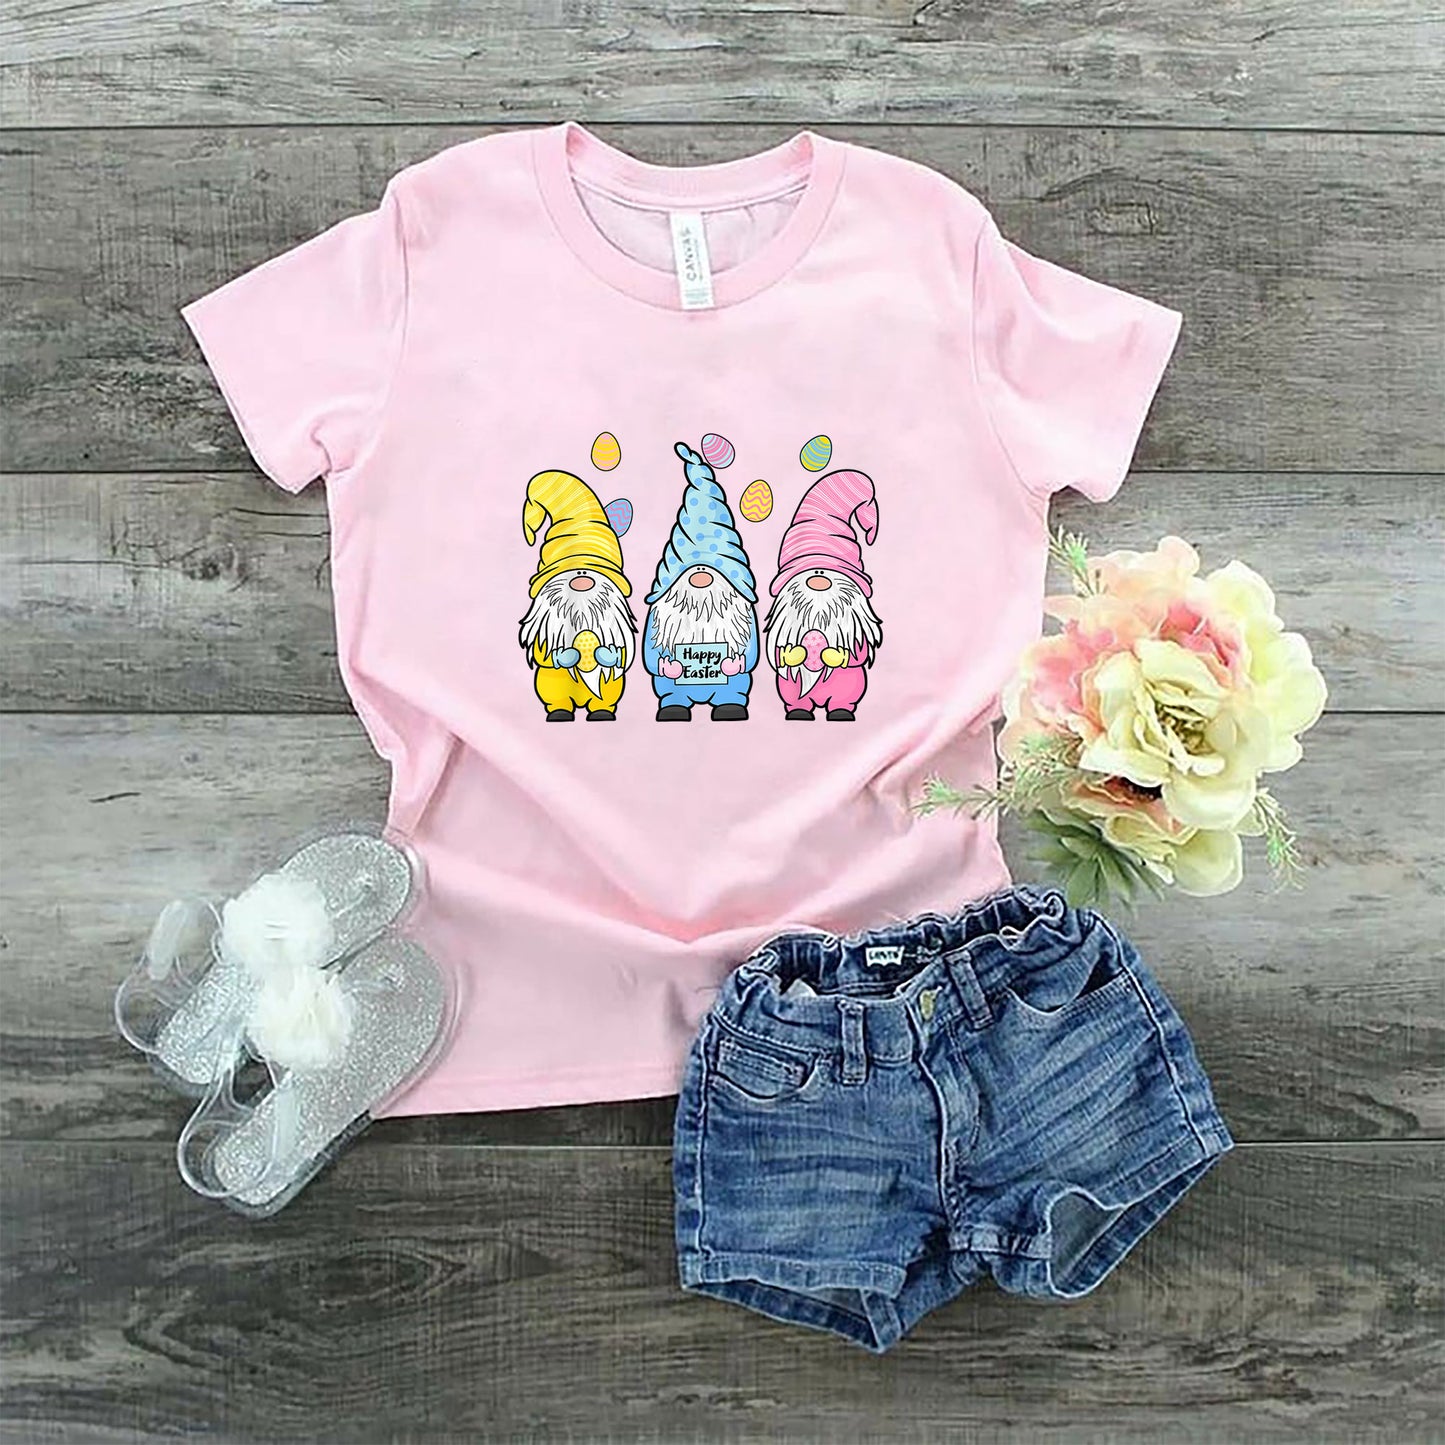 Gnome Easter Shirt, Toddler Boy Girl Easter Shirt, Easter Gifts For Kids, Easter Gifts For Toddlers